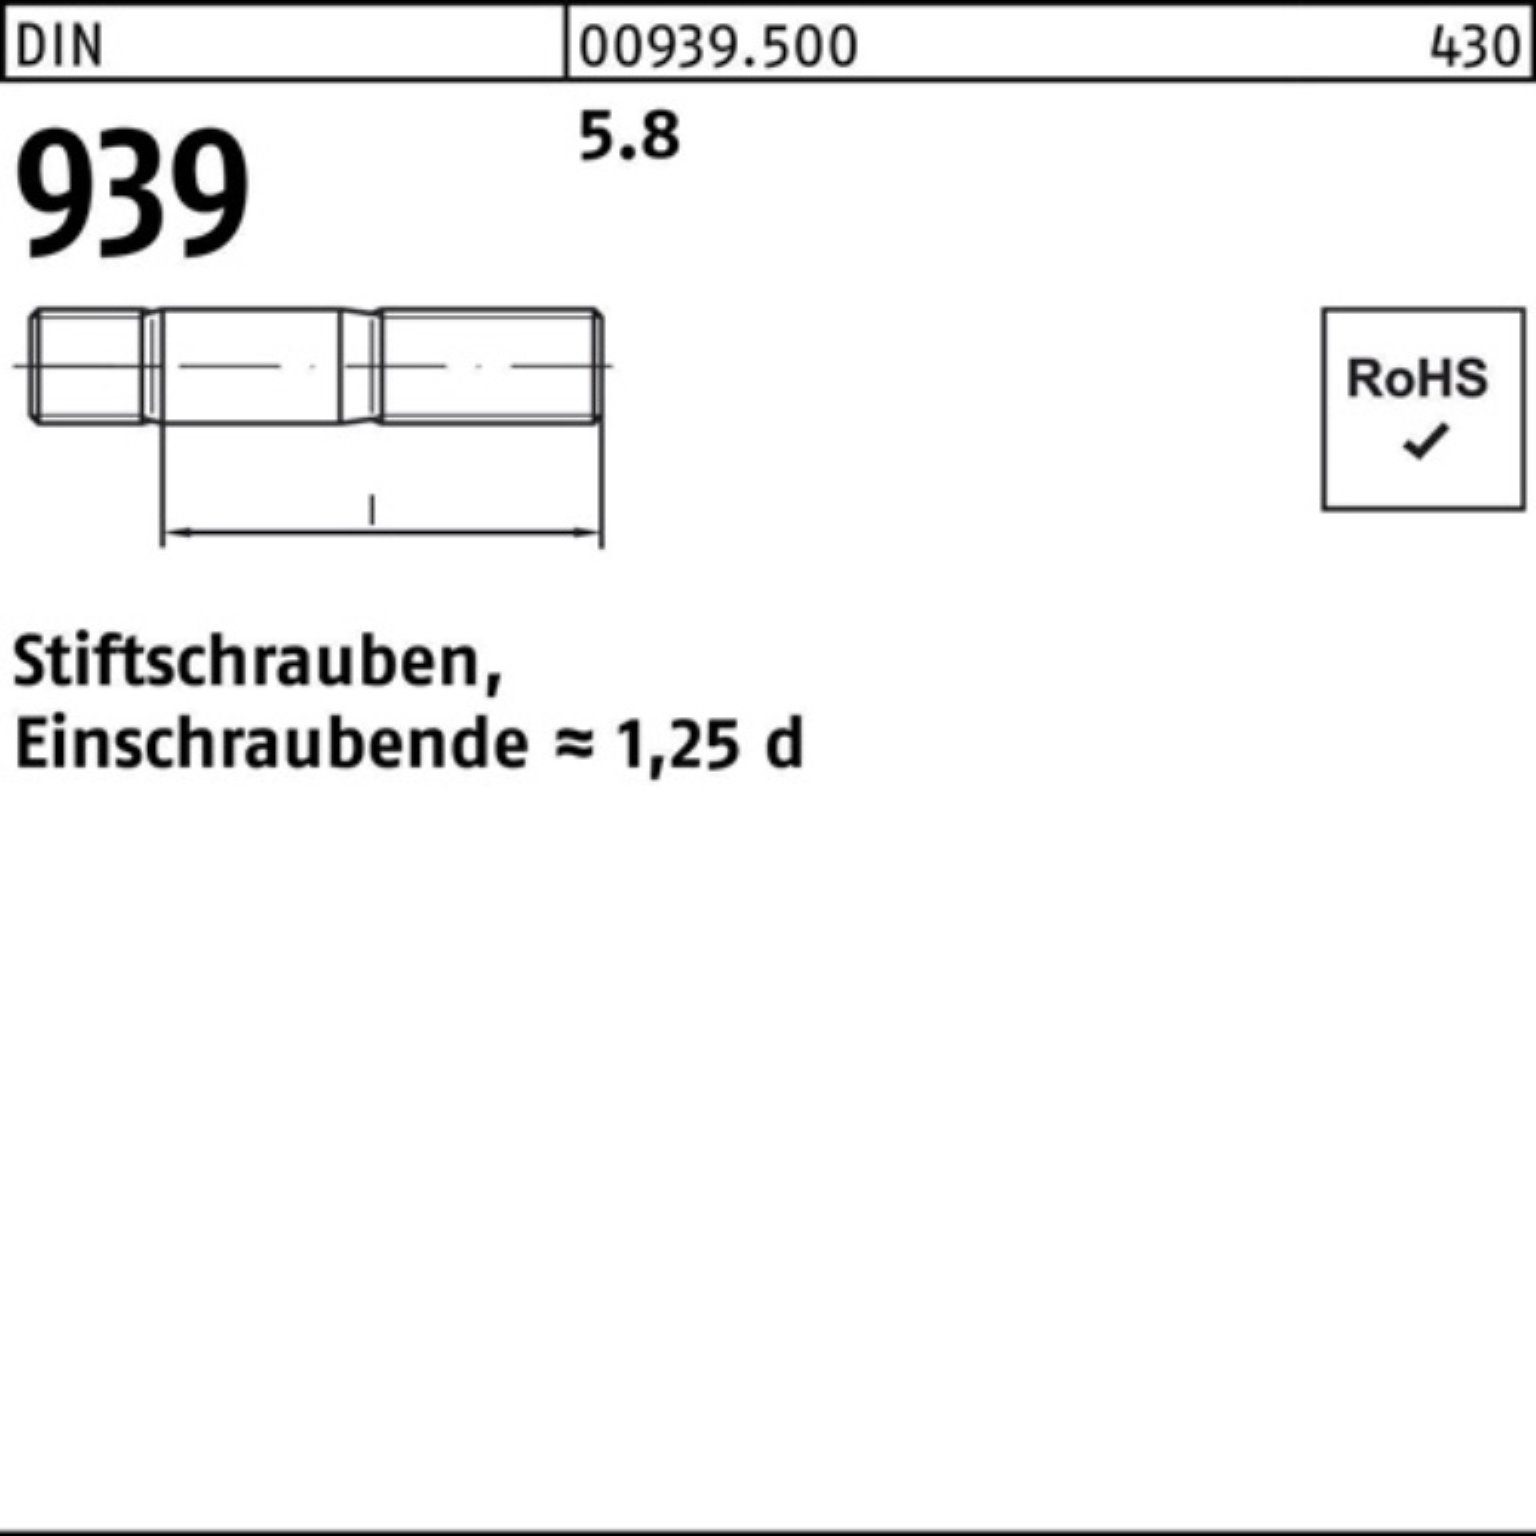 Reyher Stiftschraube 100er 25 Stiftschraube Einschraubende=1,25d 130 Pack M16x 939 DIN 5.8